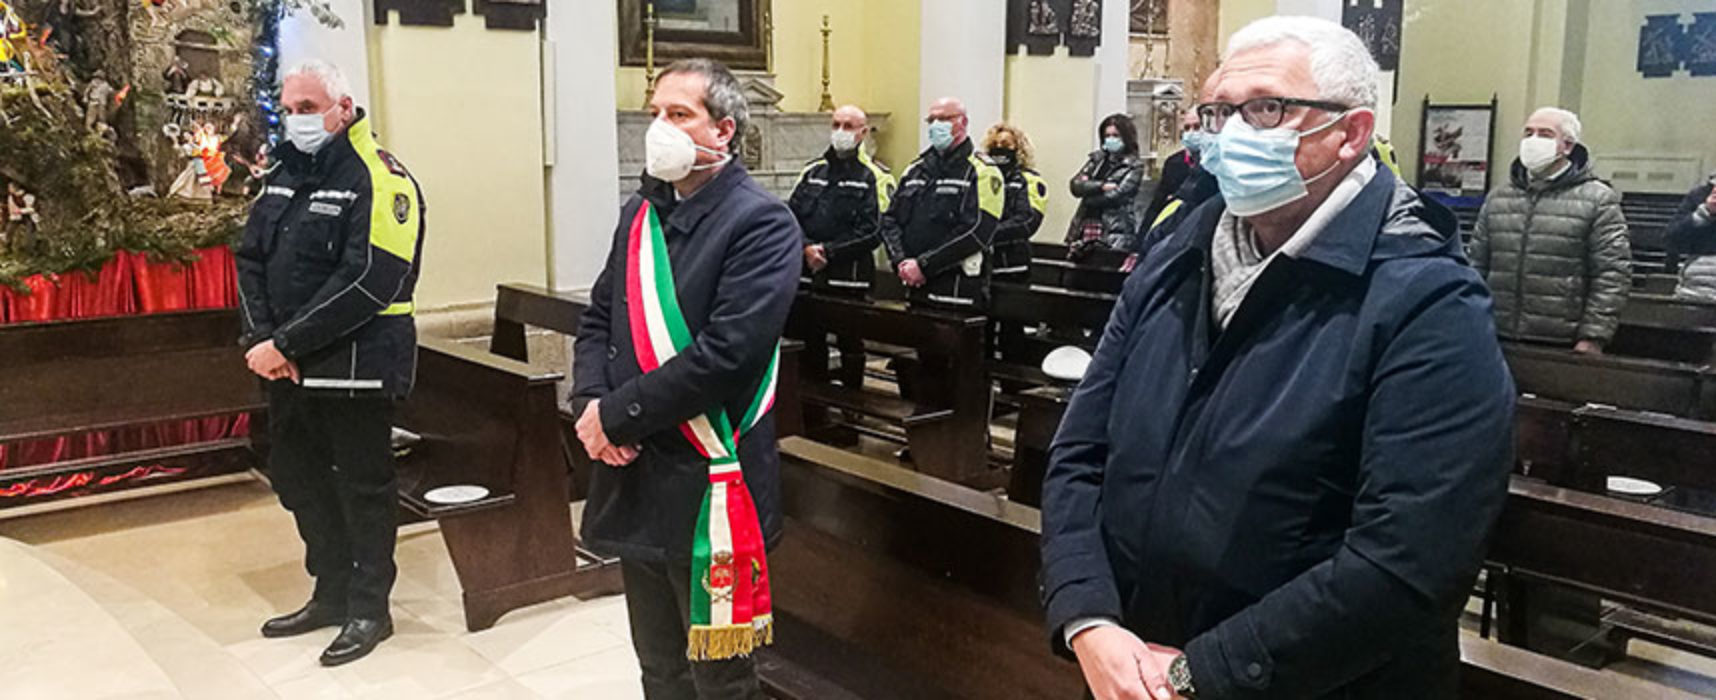 Celebrata messa in onore di san Sebastiano, patrono della Polizia Locale / FOTO